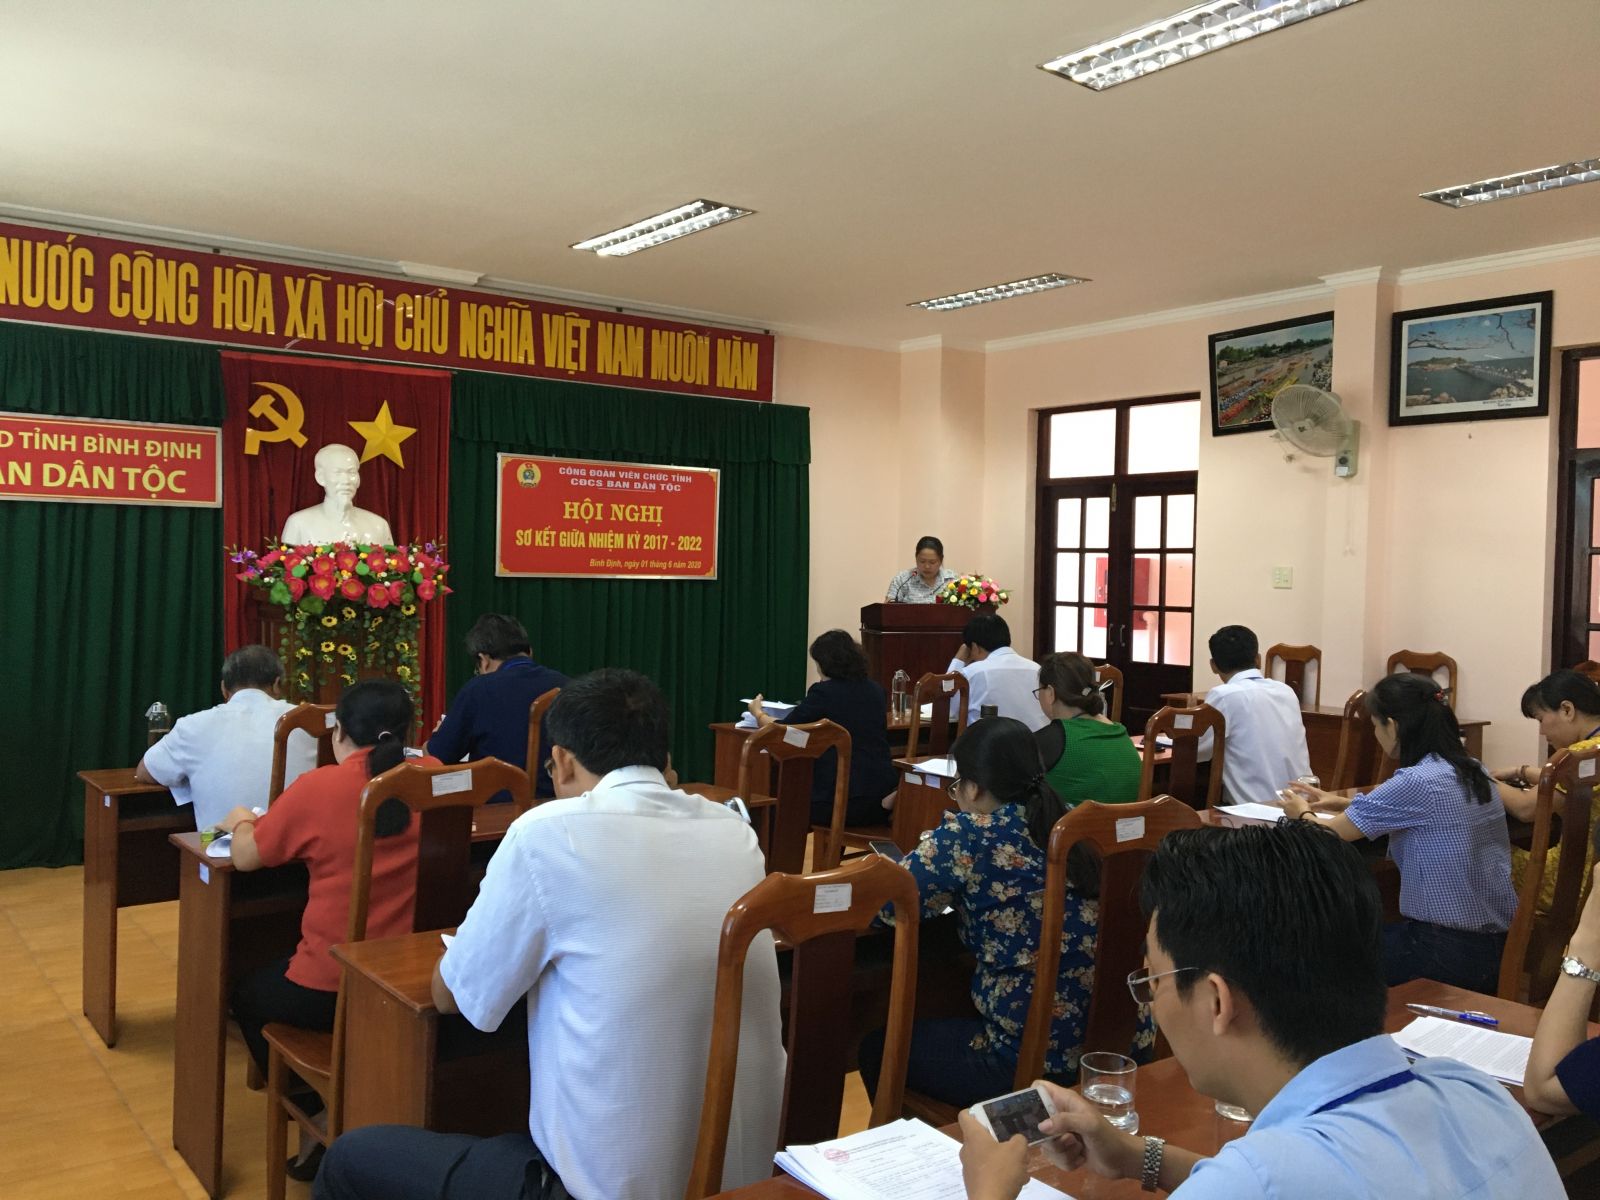 Hội nghị sơ kết giữa nhiệm kỳ (2017-2022) Công đoàn cơ sở  Ban Dân tộc tỉnh Bình Định